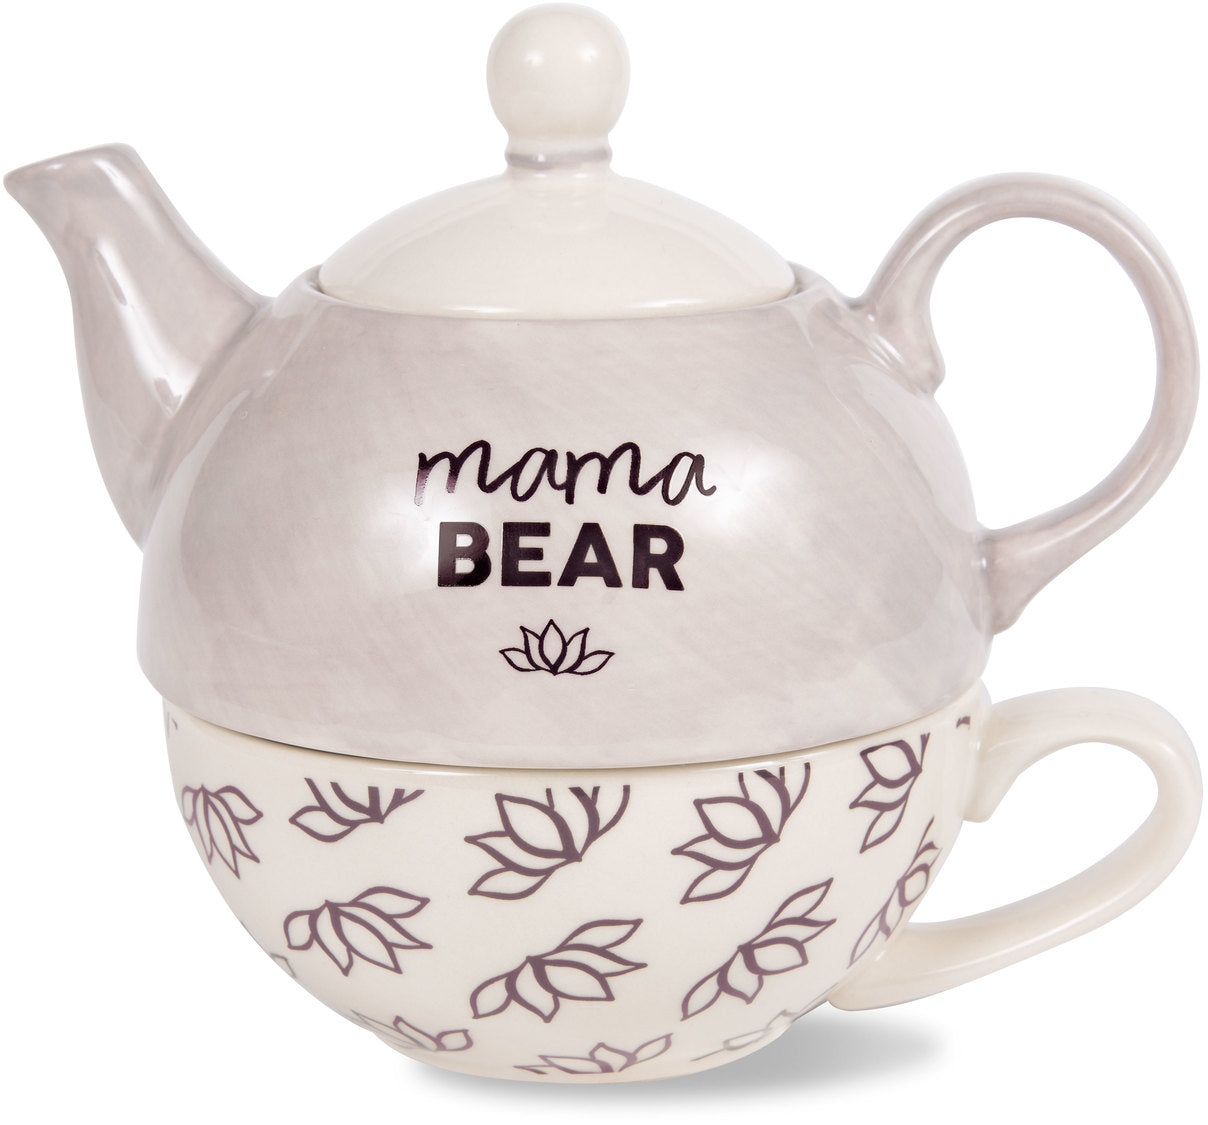 Mama bear 15oz teapot & 8 oz. Cup set